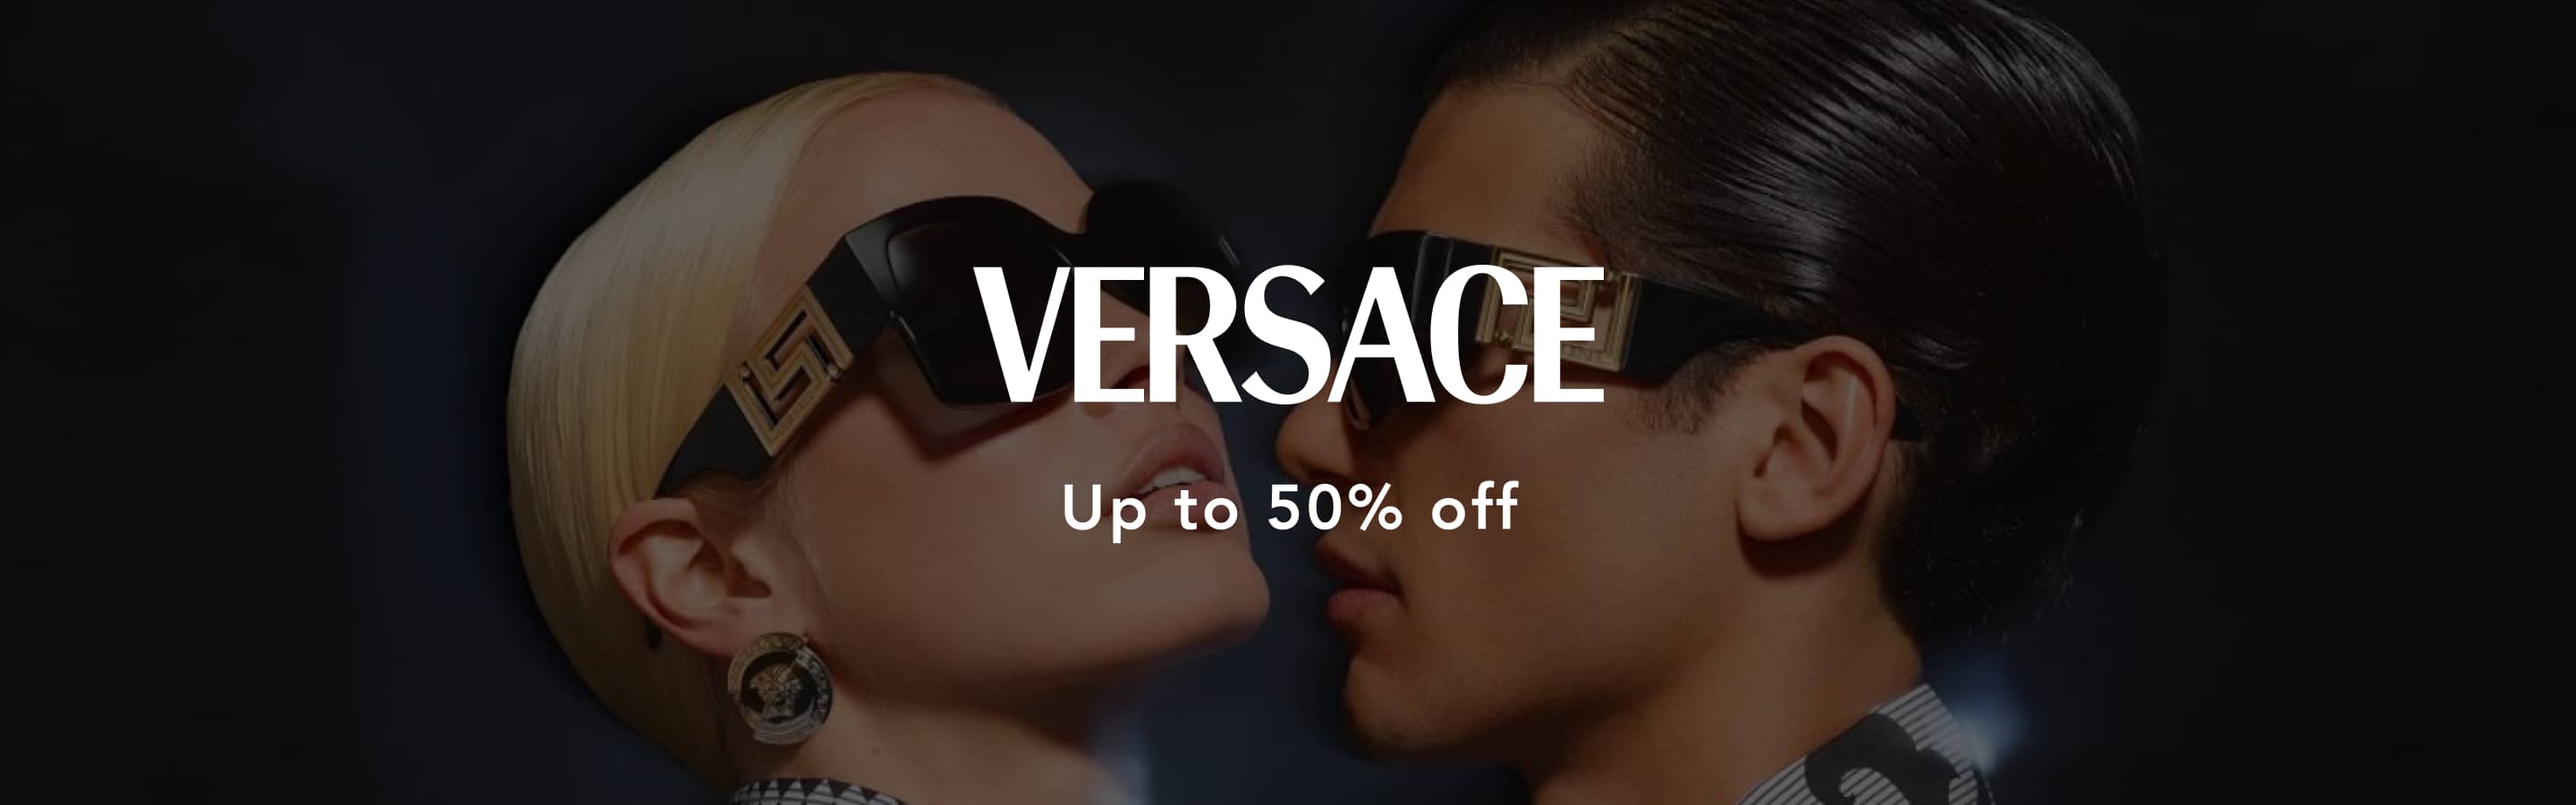 Versace Outlet | Offers on Sunglasses, Bags, Fragrances | Secret Sales